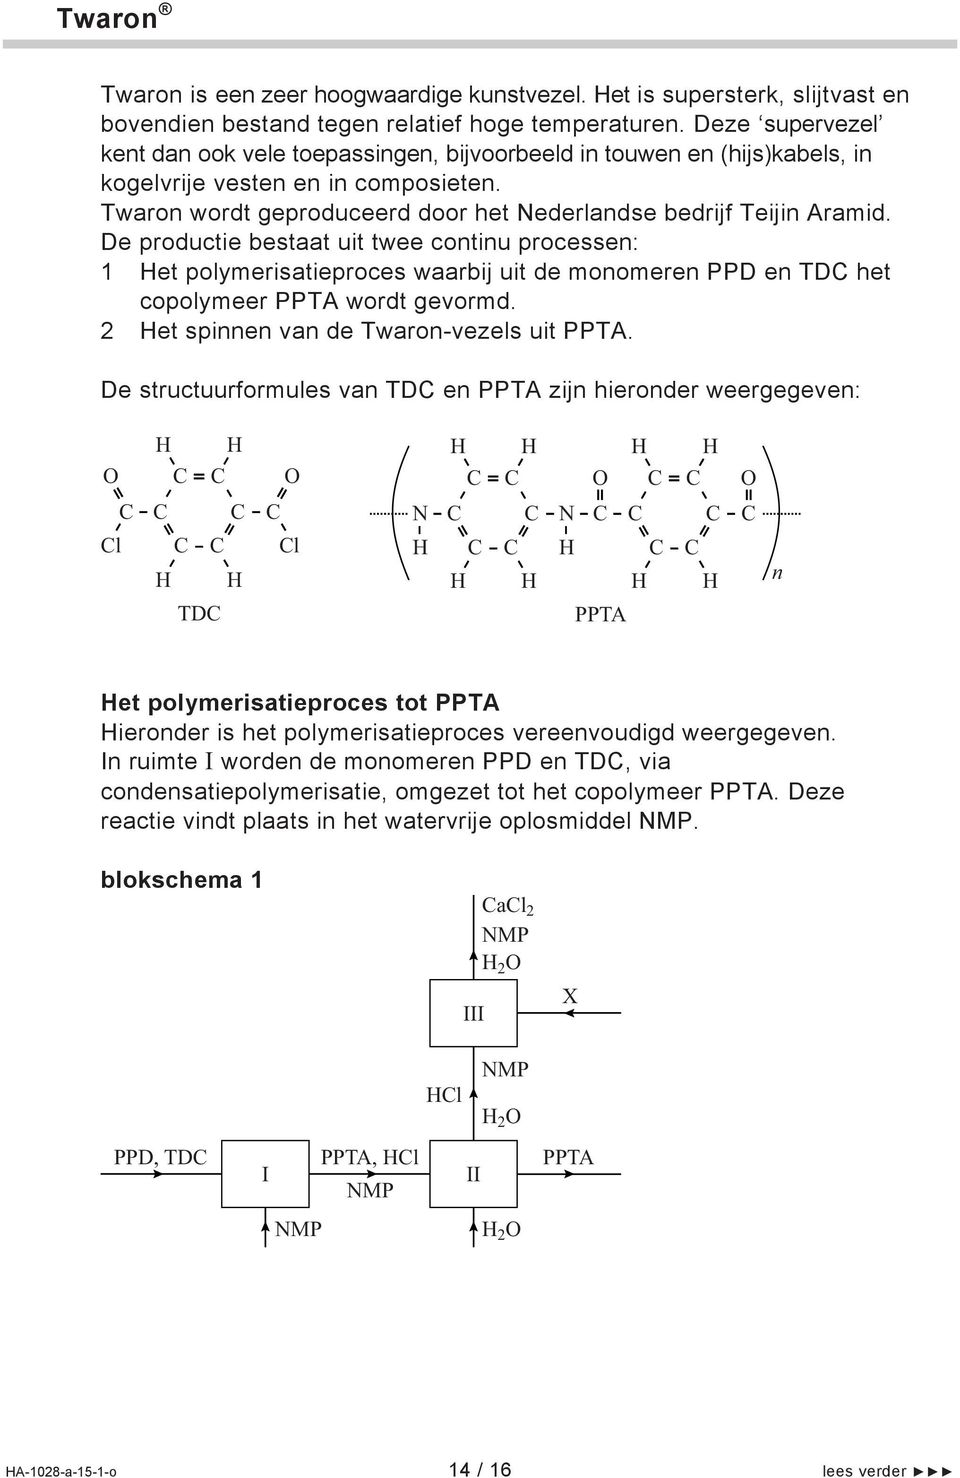 De productie bestaat uit twee continu processen: 1 et polymerisatieproces waarbij uit de monomeren PPD en TD het copolymeer PPTA wordt gevormd. 2 et spinnen van de Twaron-vezels uit PPTA.